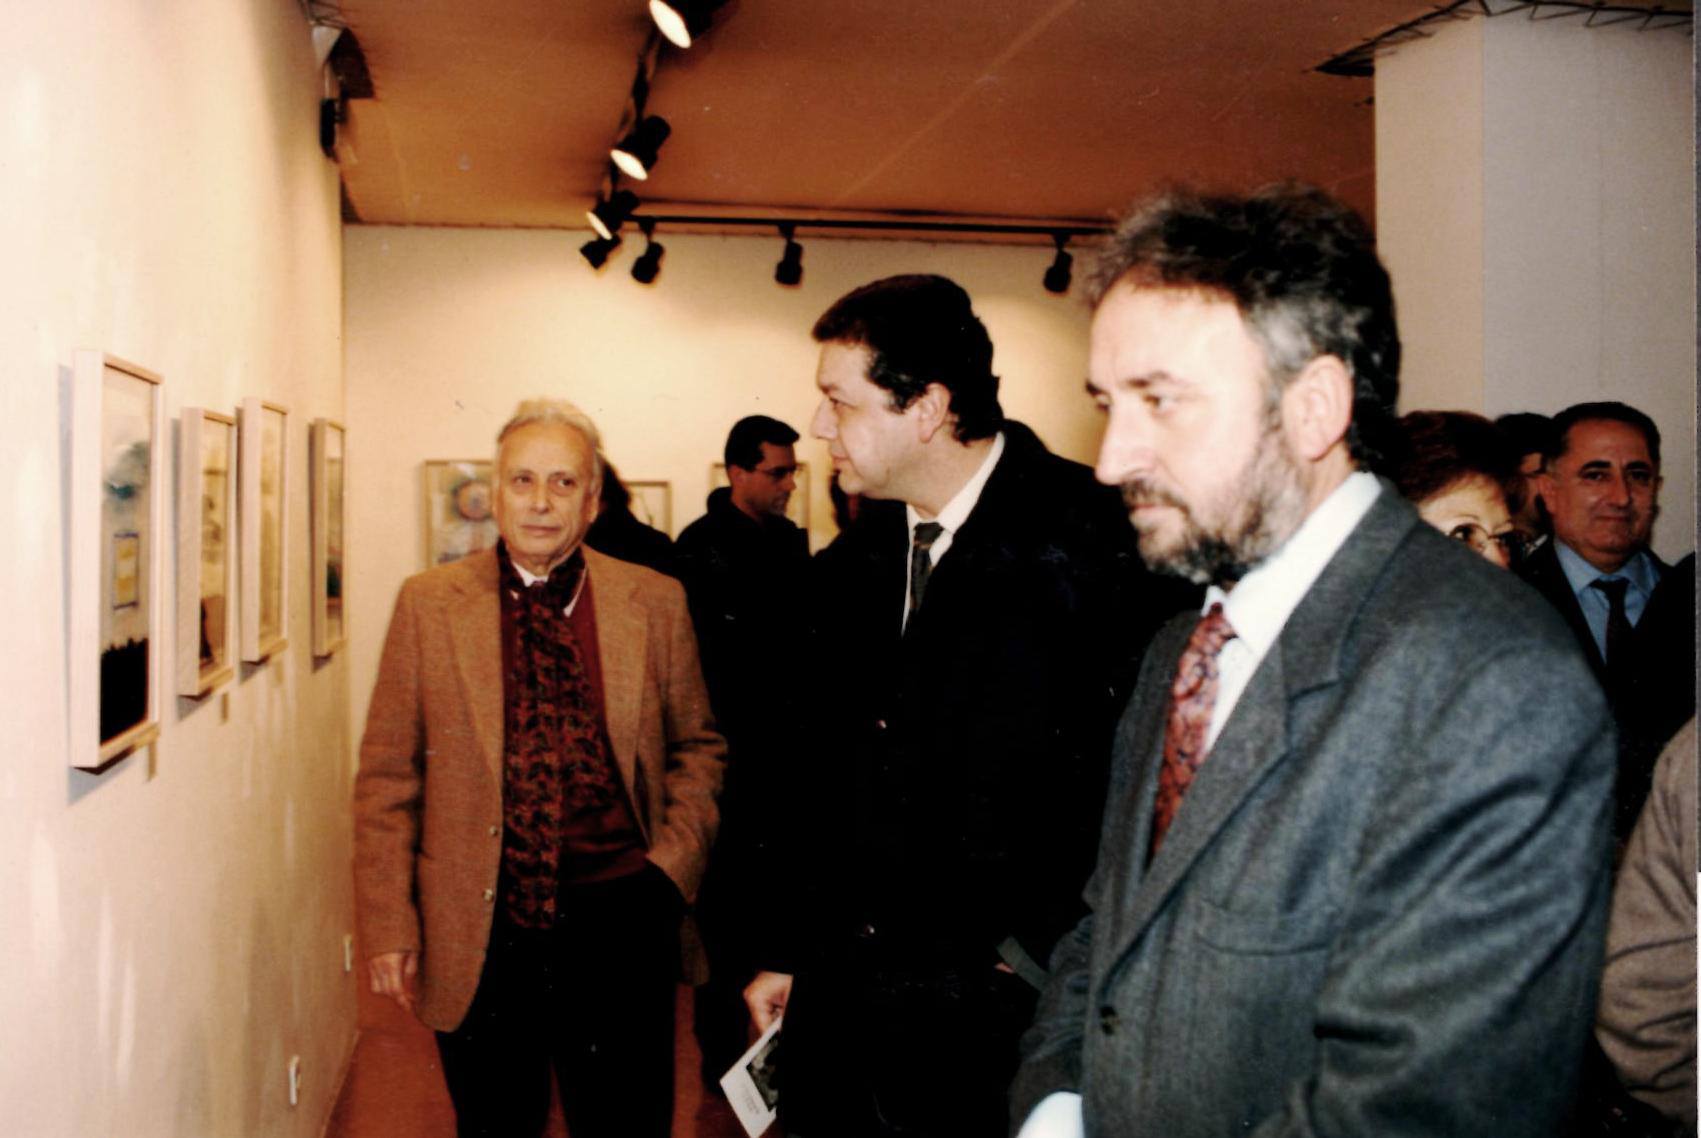 Inauguració exposició de J. Grau Garriga el 1997 a Canals Galeria d'Art. Foto: Arxiu